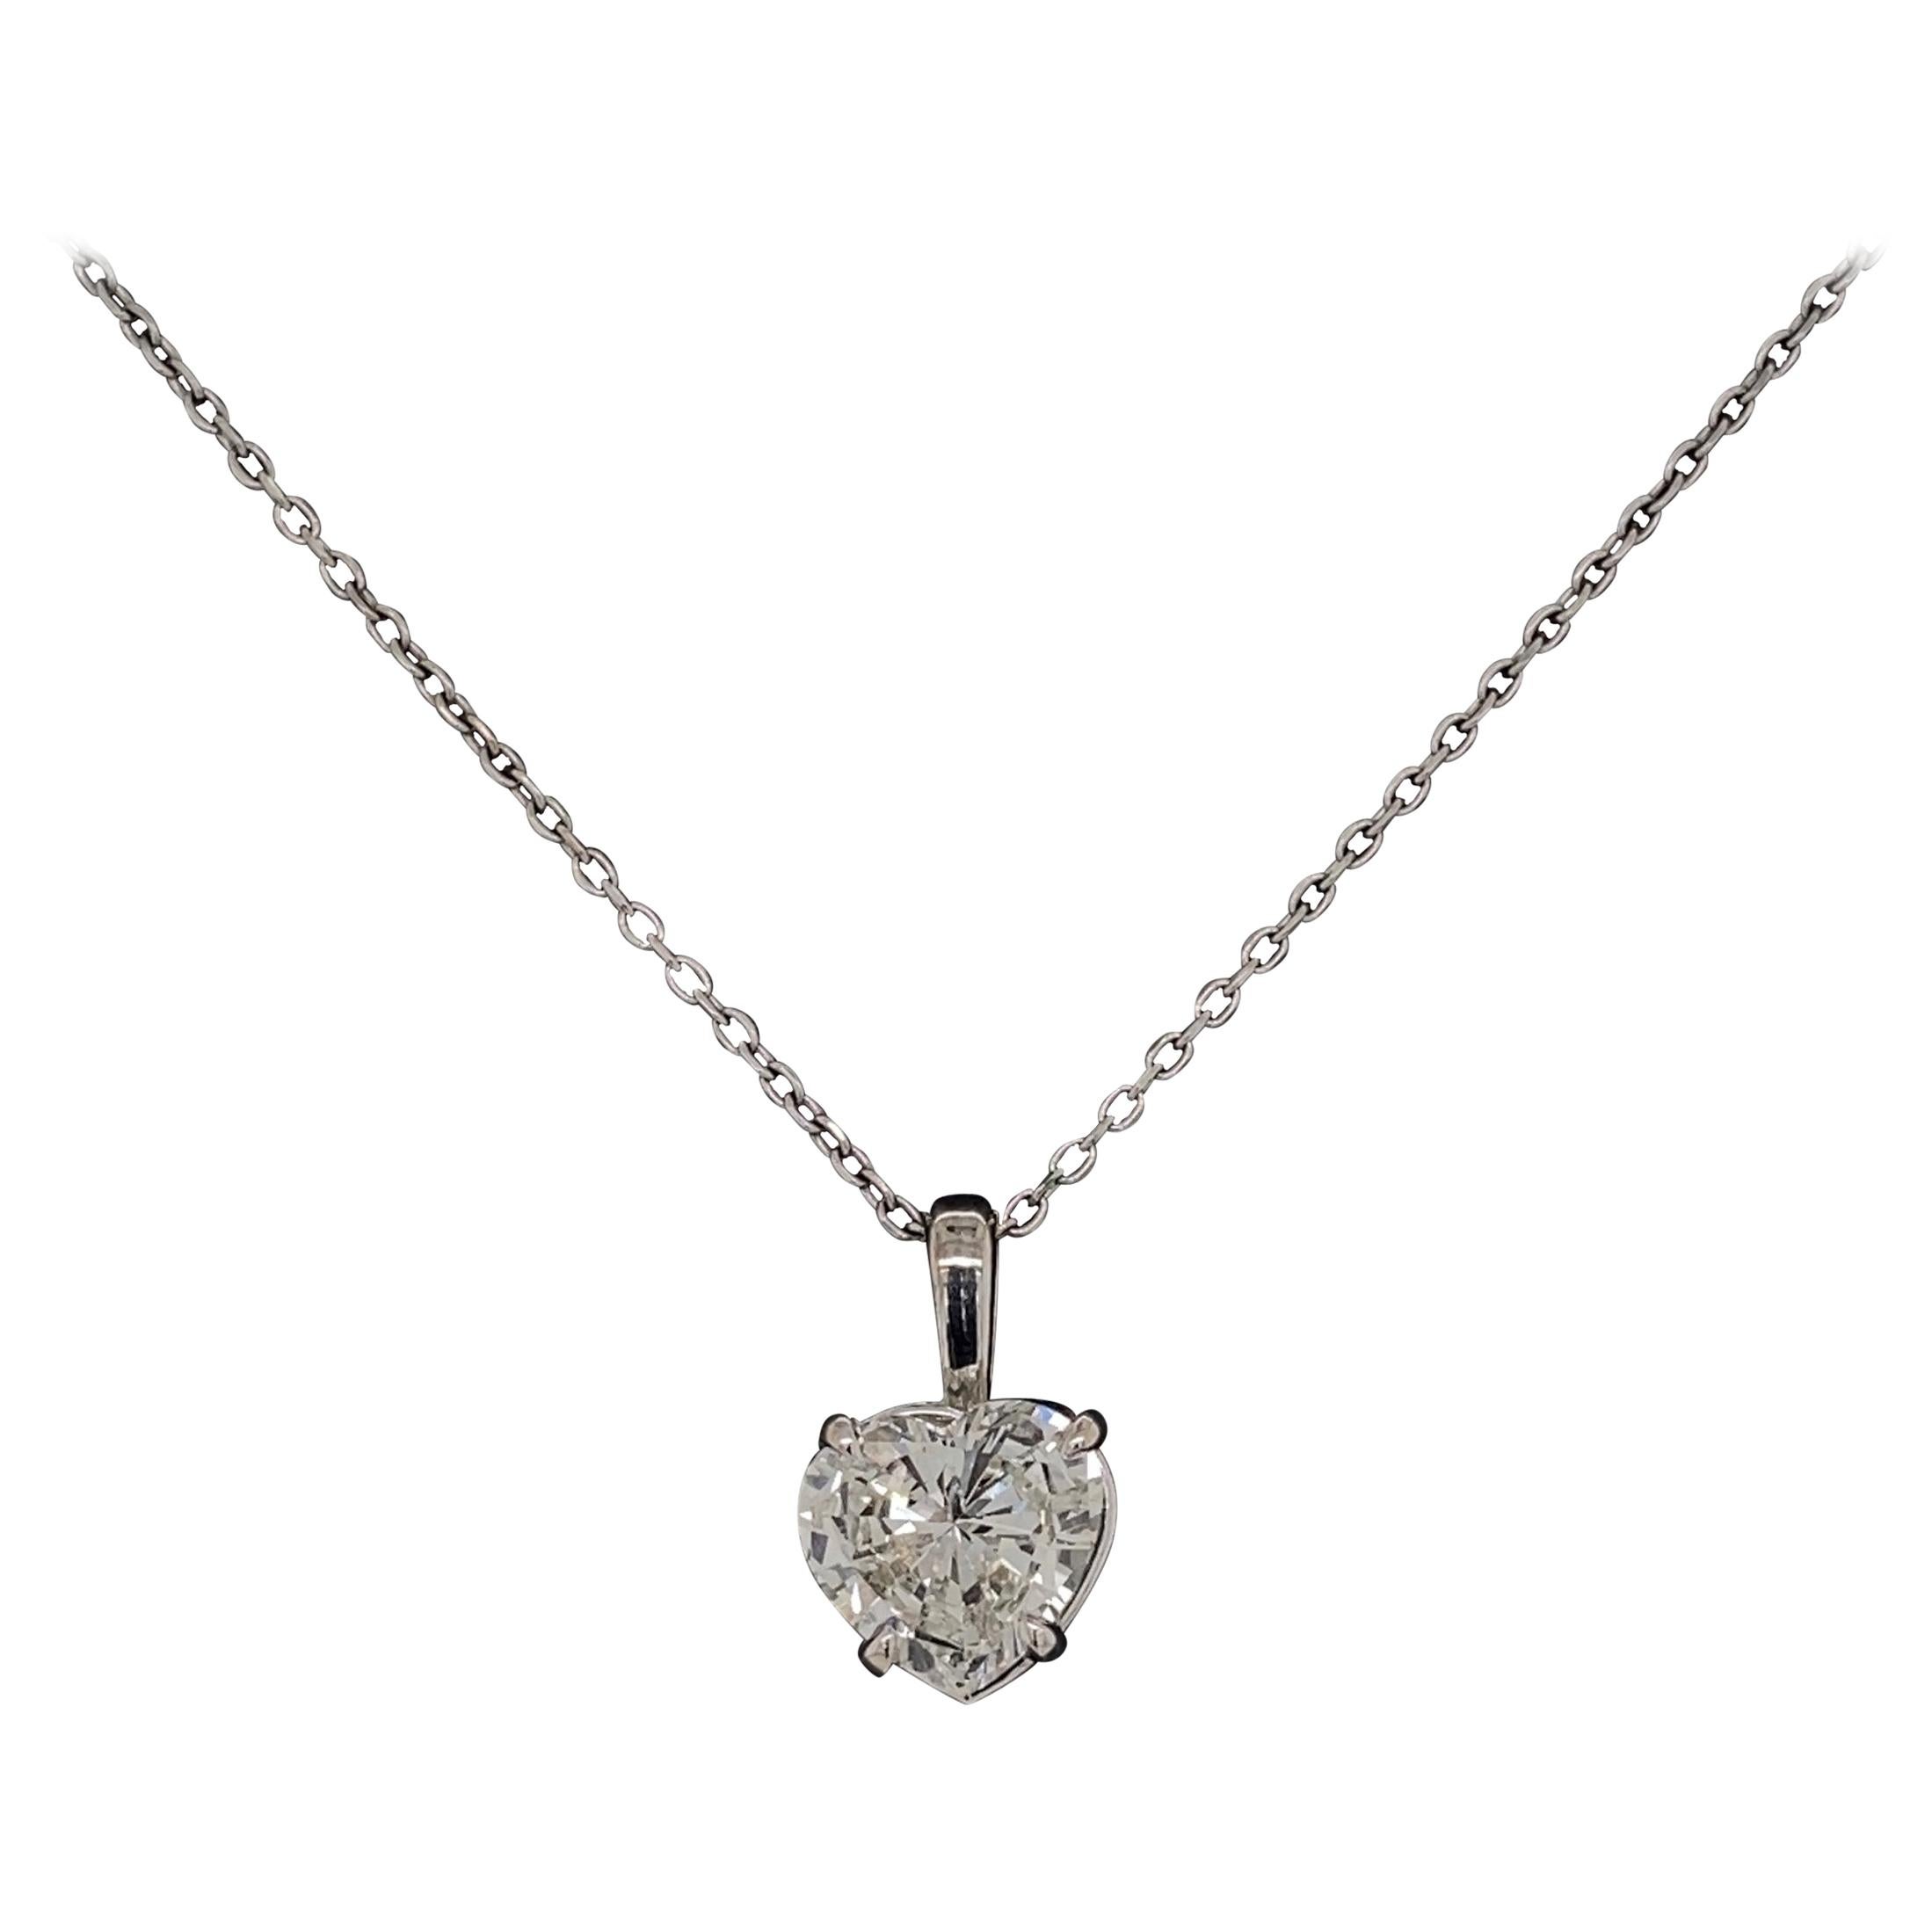 Collier pendentif solitaire en or avec diamant en forme de cœur de 1,26 carat certifié GIA, pièce de joaillerie d'art